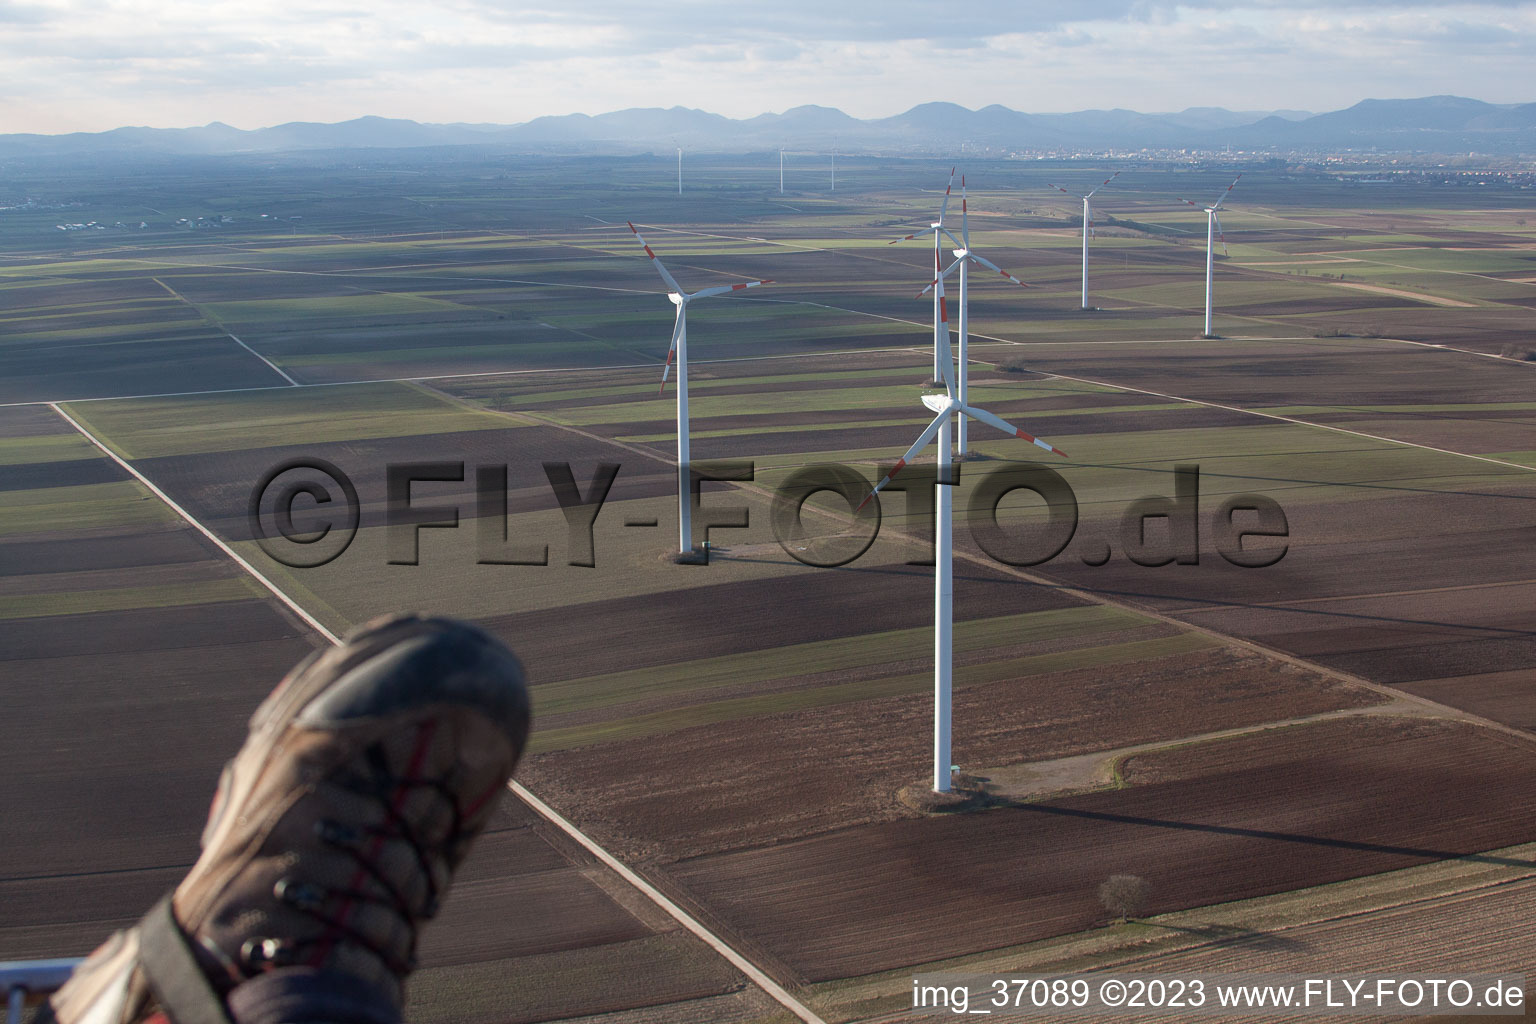 Wind turbines in Herxheimweyher in the state Rhineland-Palatinate, Germany